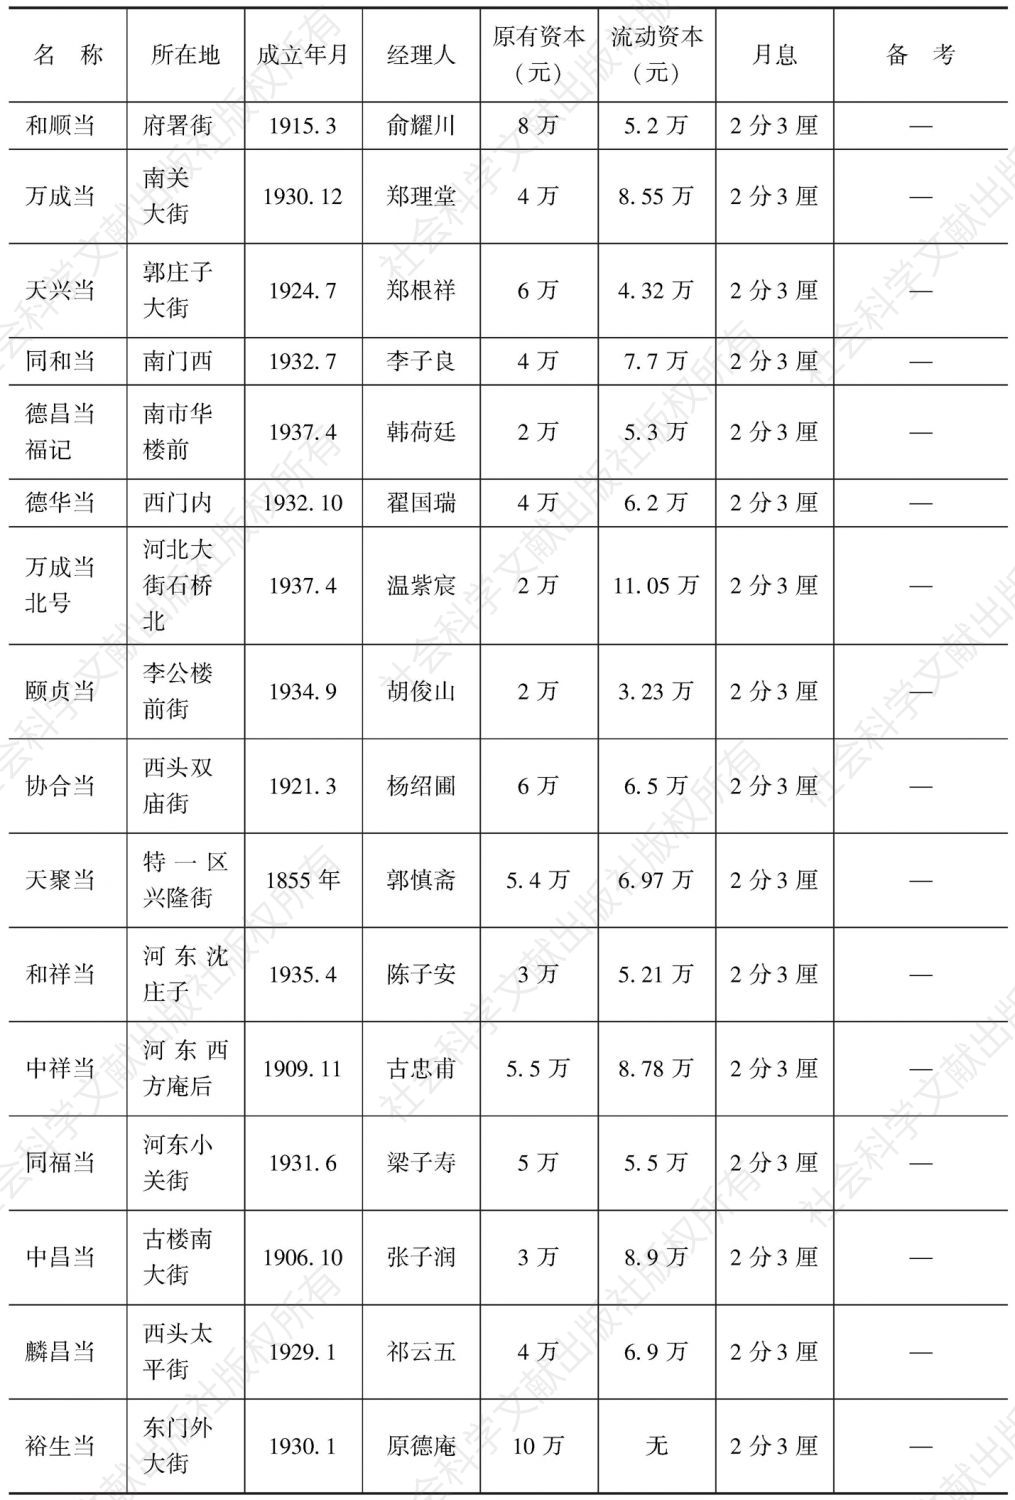 表5-15 天津特别市典业调查（1939年12月9日）-续表1